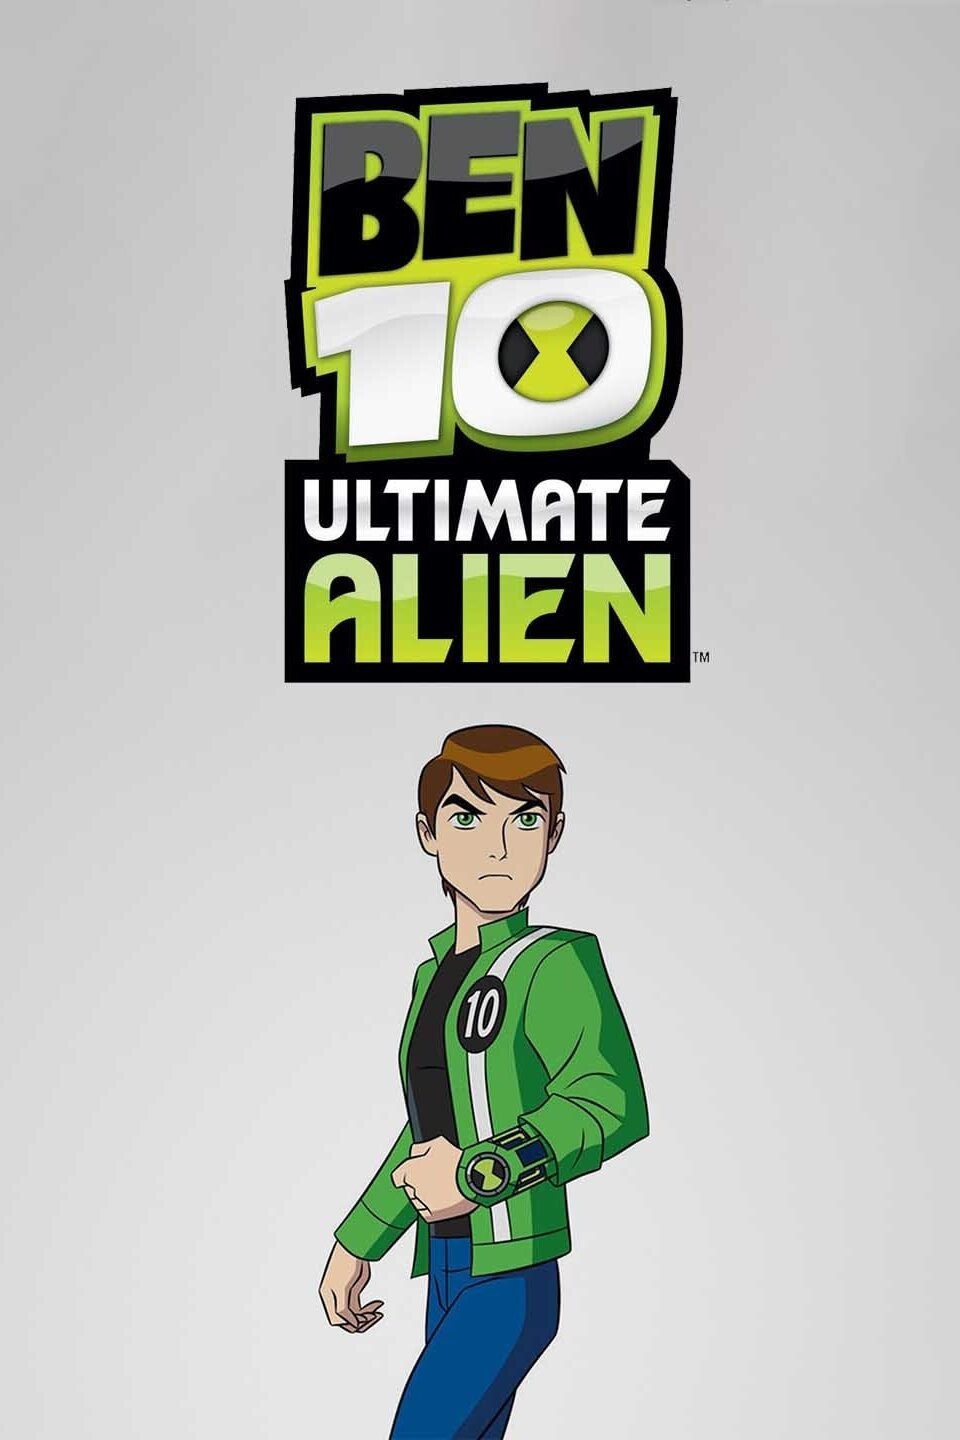 Ben 10: Ultimate Alien Season 1 Watch Online Full Episodes HD Streaming